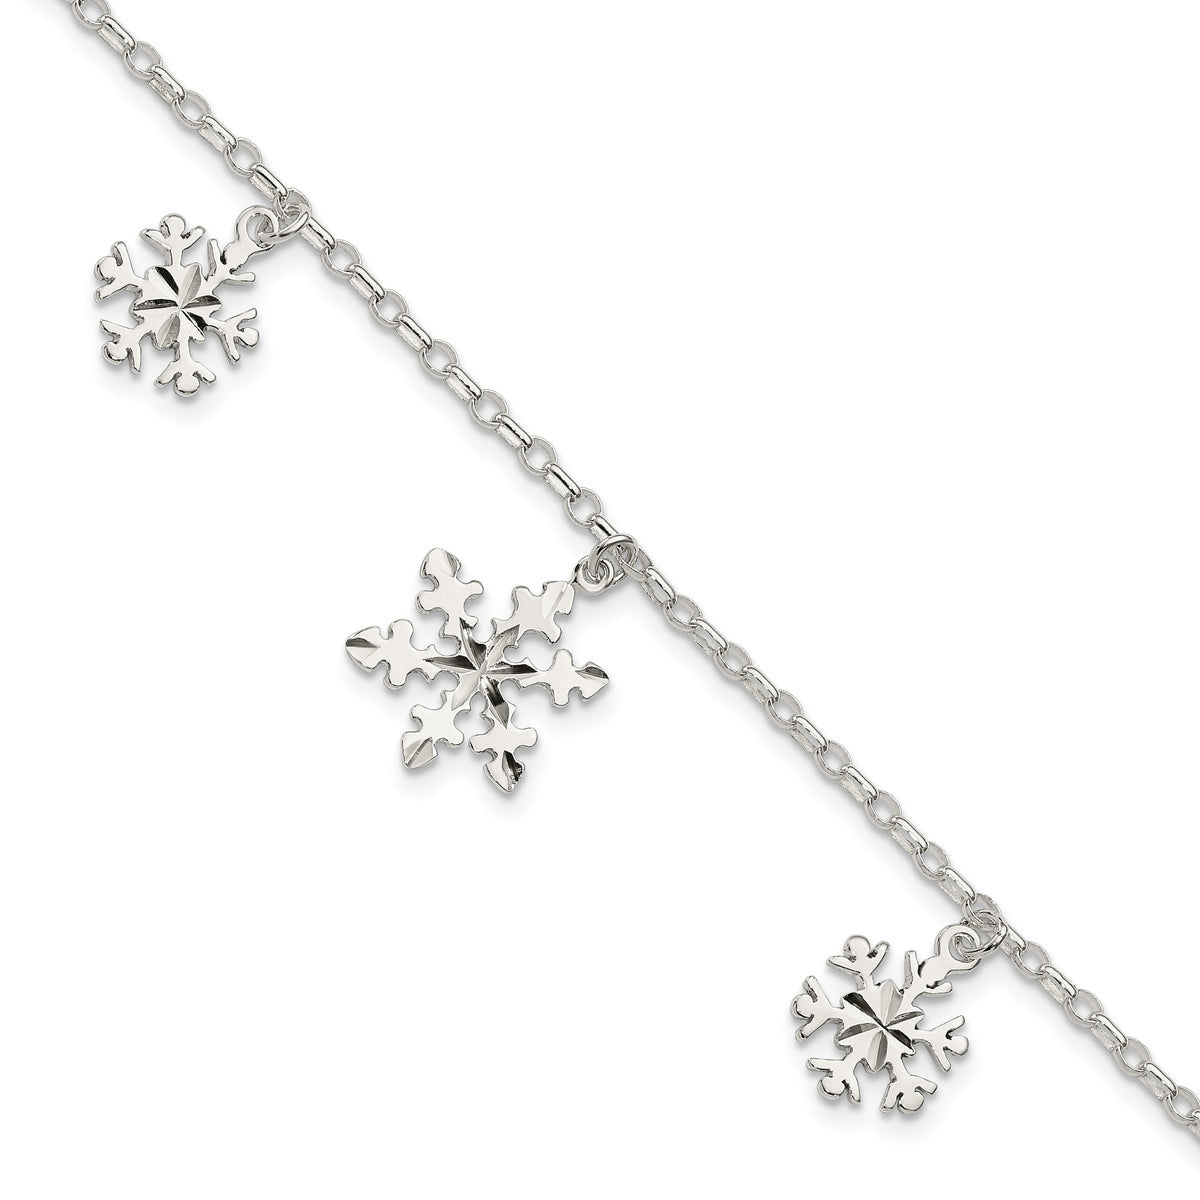 Sterling Silver Diamond-Cut Snowflake Bracelet